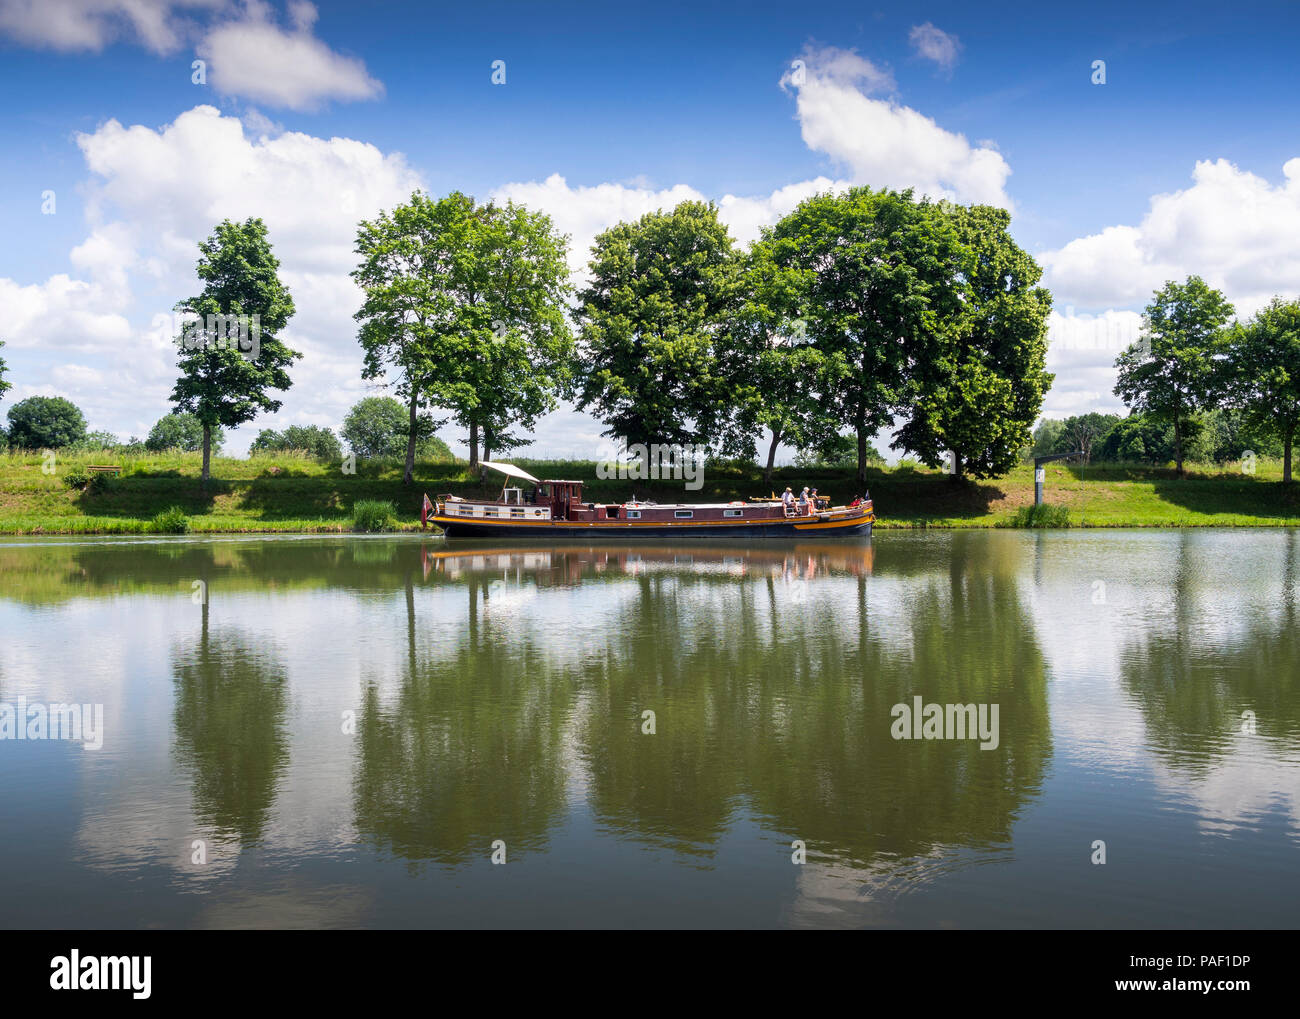 House boat, Canal de Loire, Decize, Nievre département, Bourgogne-Franche-Comté, France Banque D'Images